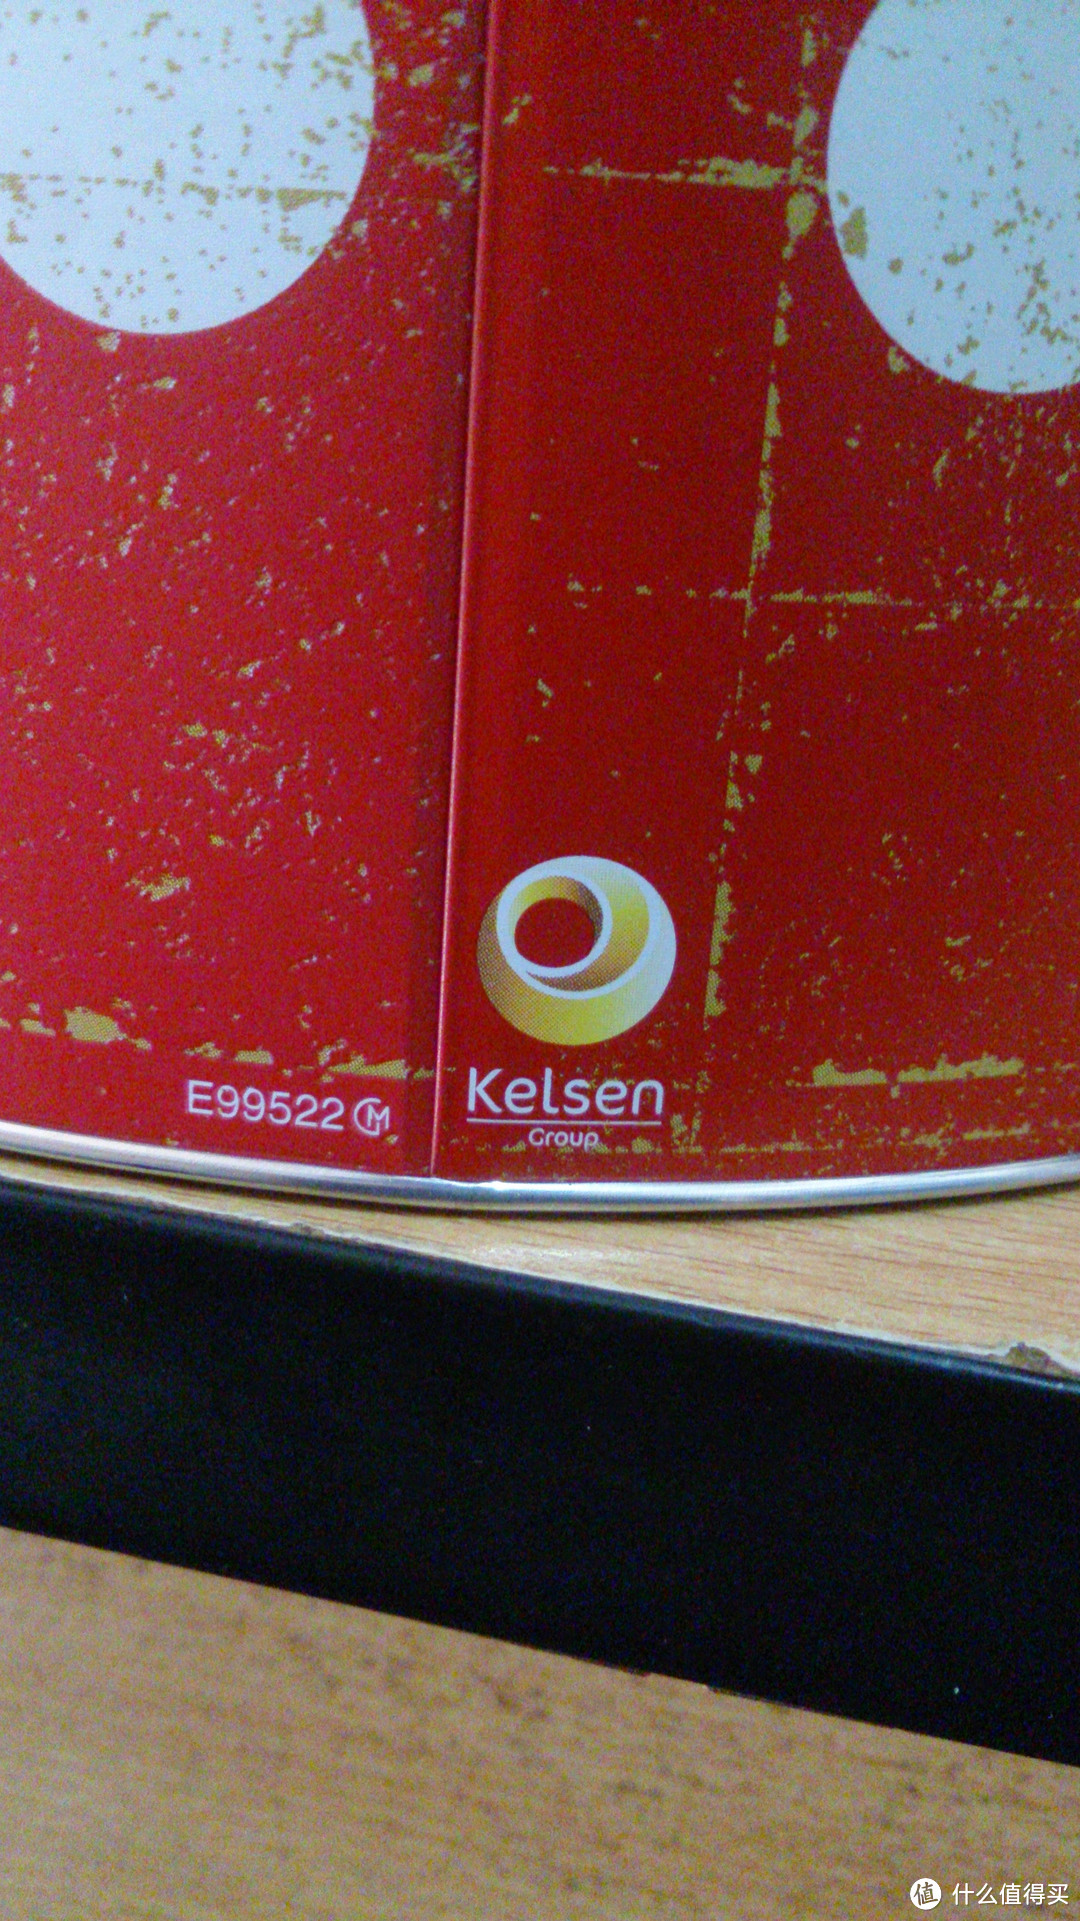 入门吃货的选择 kelsen 凯尔森 红色圣诞系列908g曲奇饼干 与 蓝罐的对比